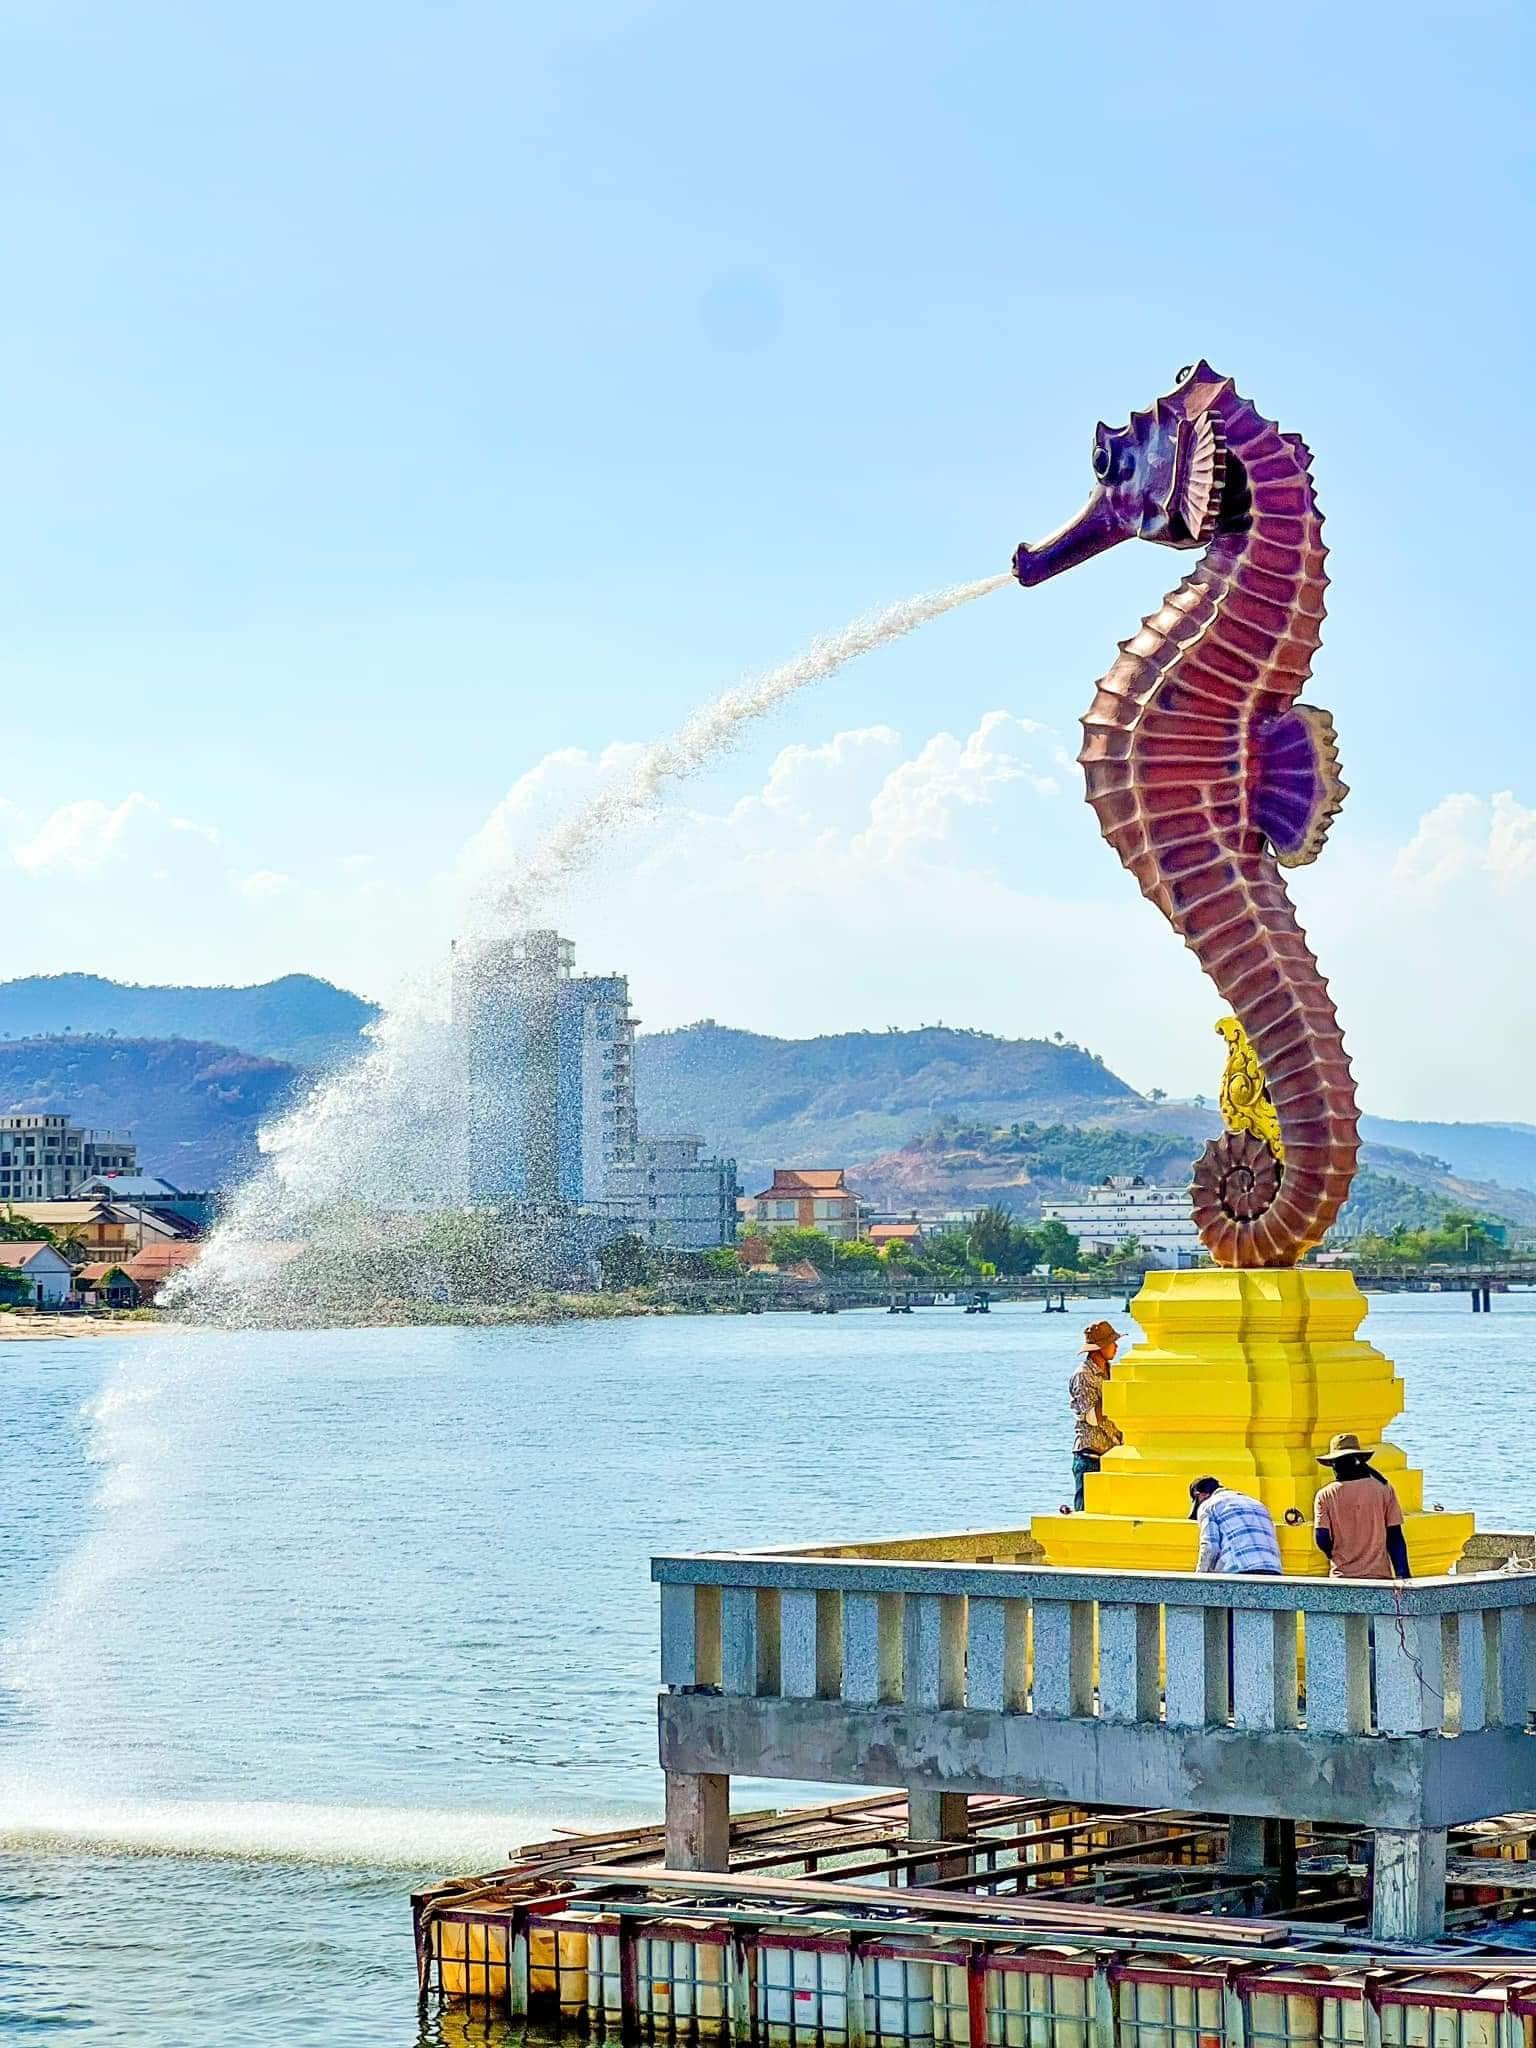 这座矗立在旧省厅外的8公尺高海马雕像，俯瞰著贡布市的甘榜湾河流，嘴里源源不绝地喷出水柱。（图取自网络）